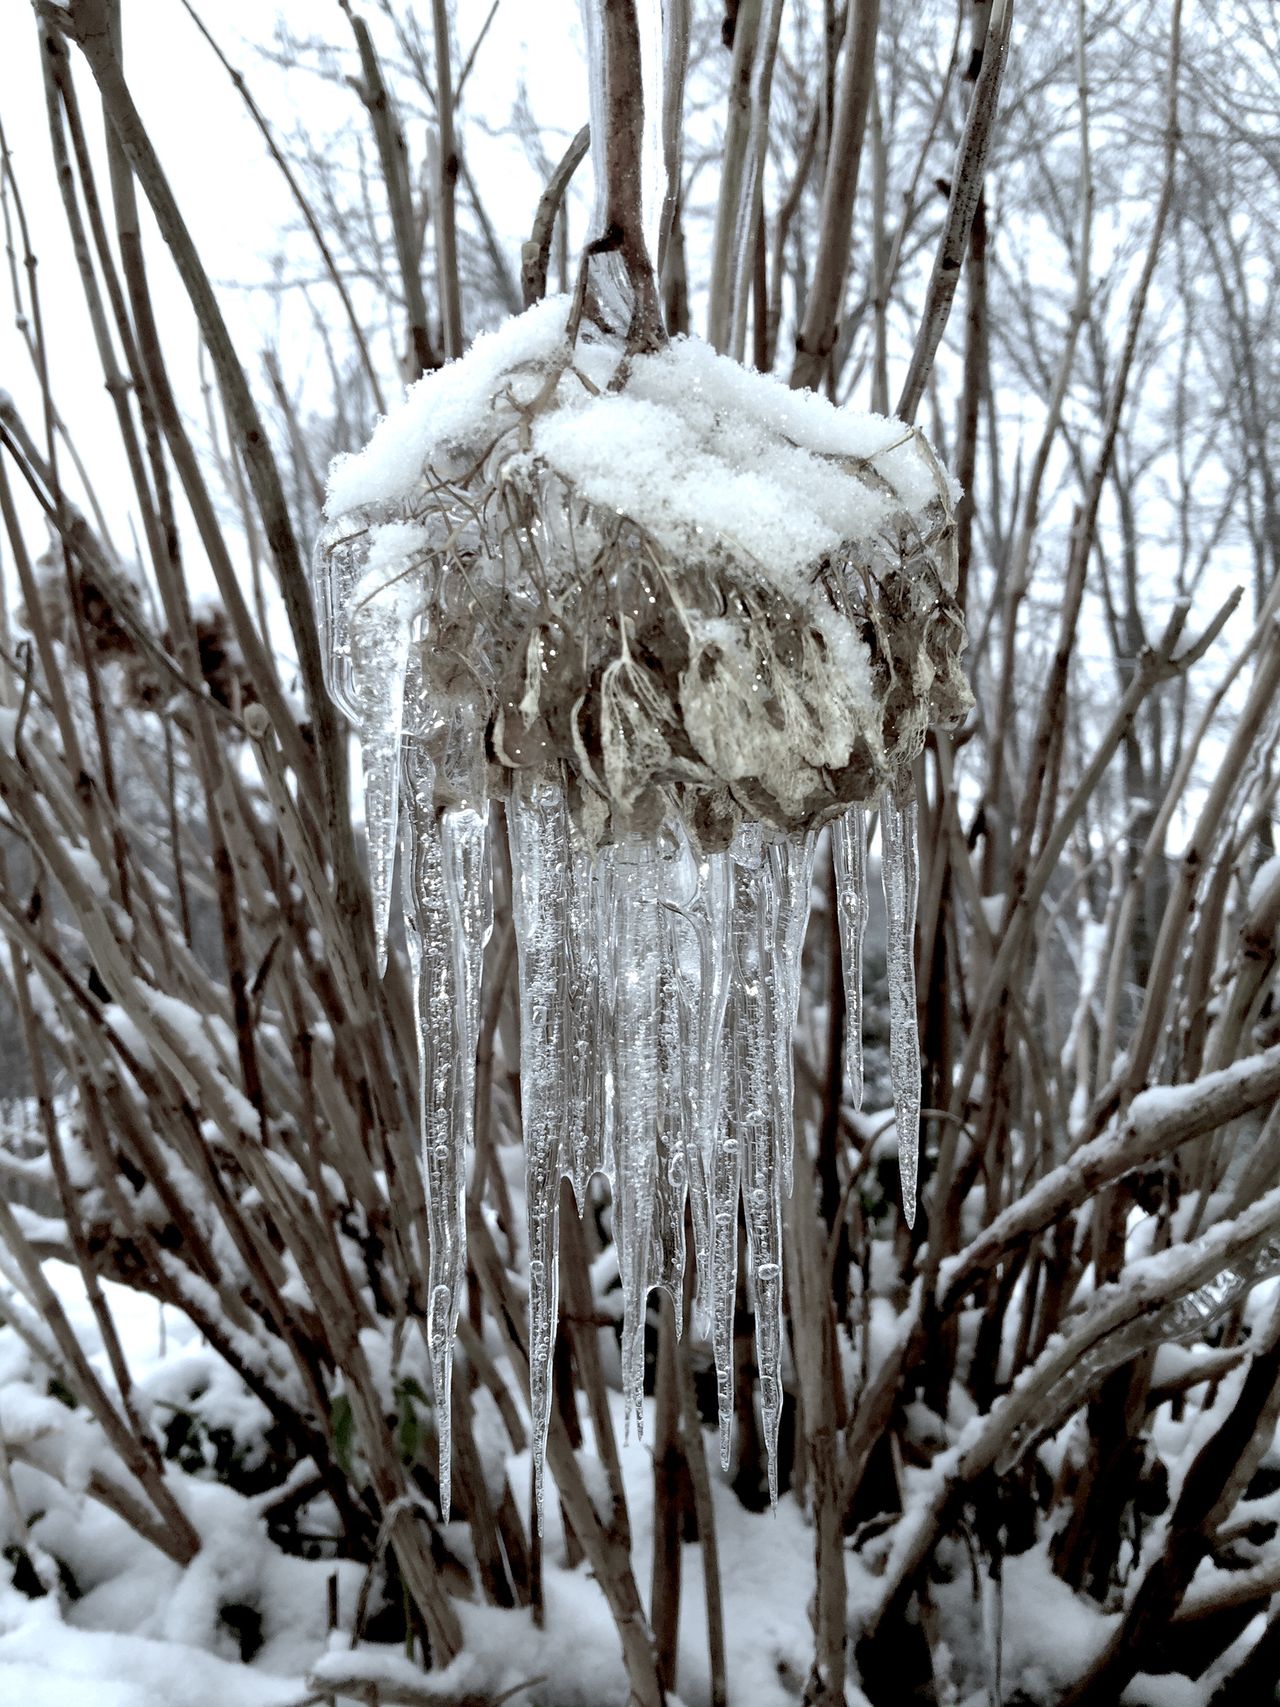 Frozen hydrangeas